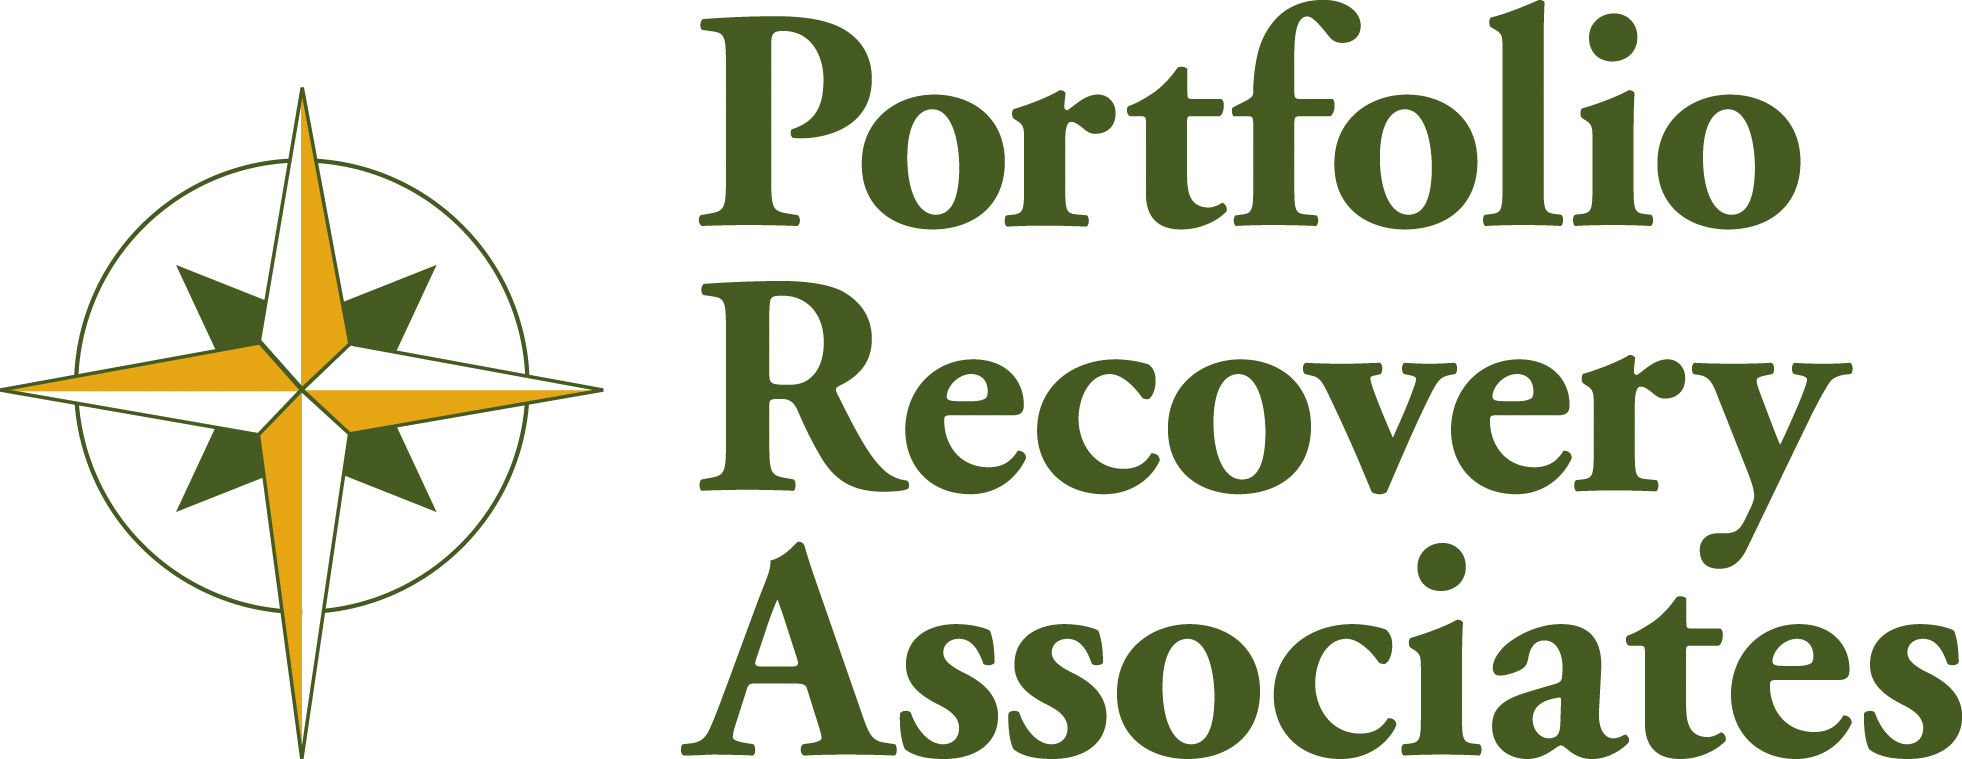 Portfolio recovery associates job reviews